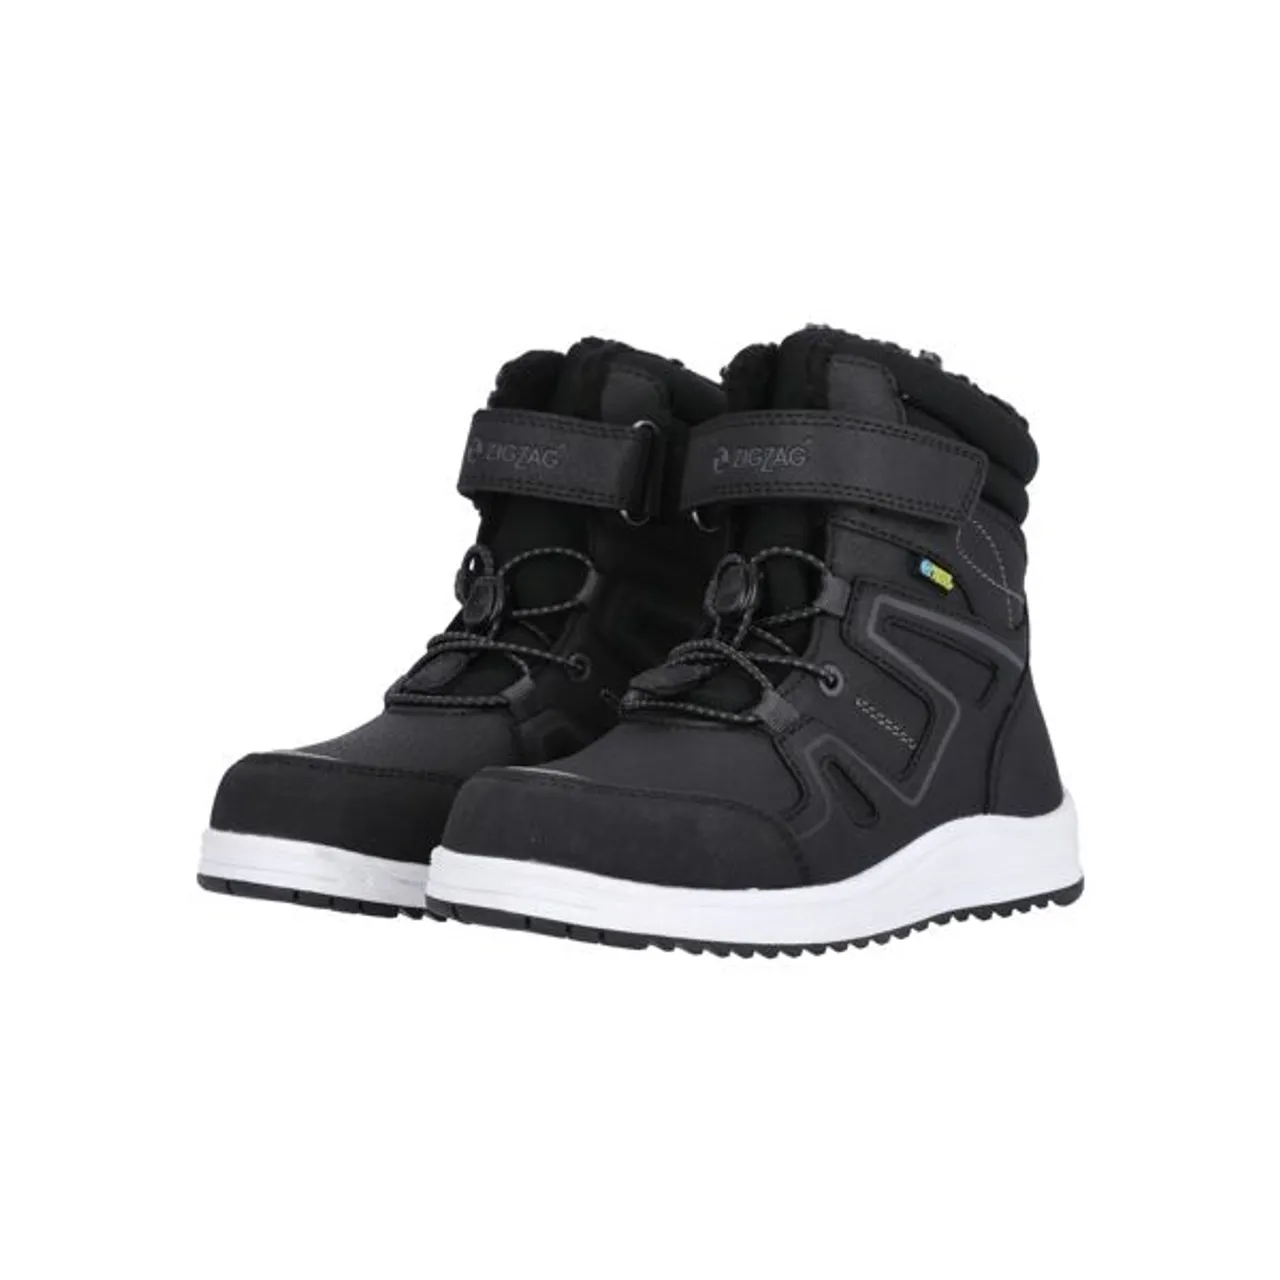 Stiefel ZIGZAG "Rincet" Gr. 24, schwarz-weiß (schwarz, weiß) Schuhe Outdoorschuhe